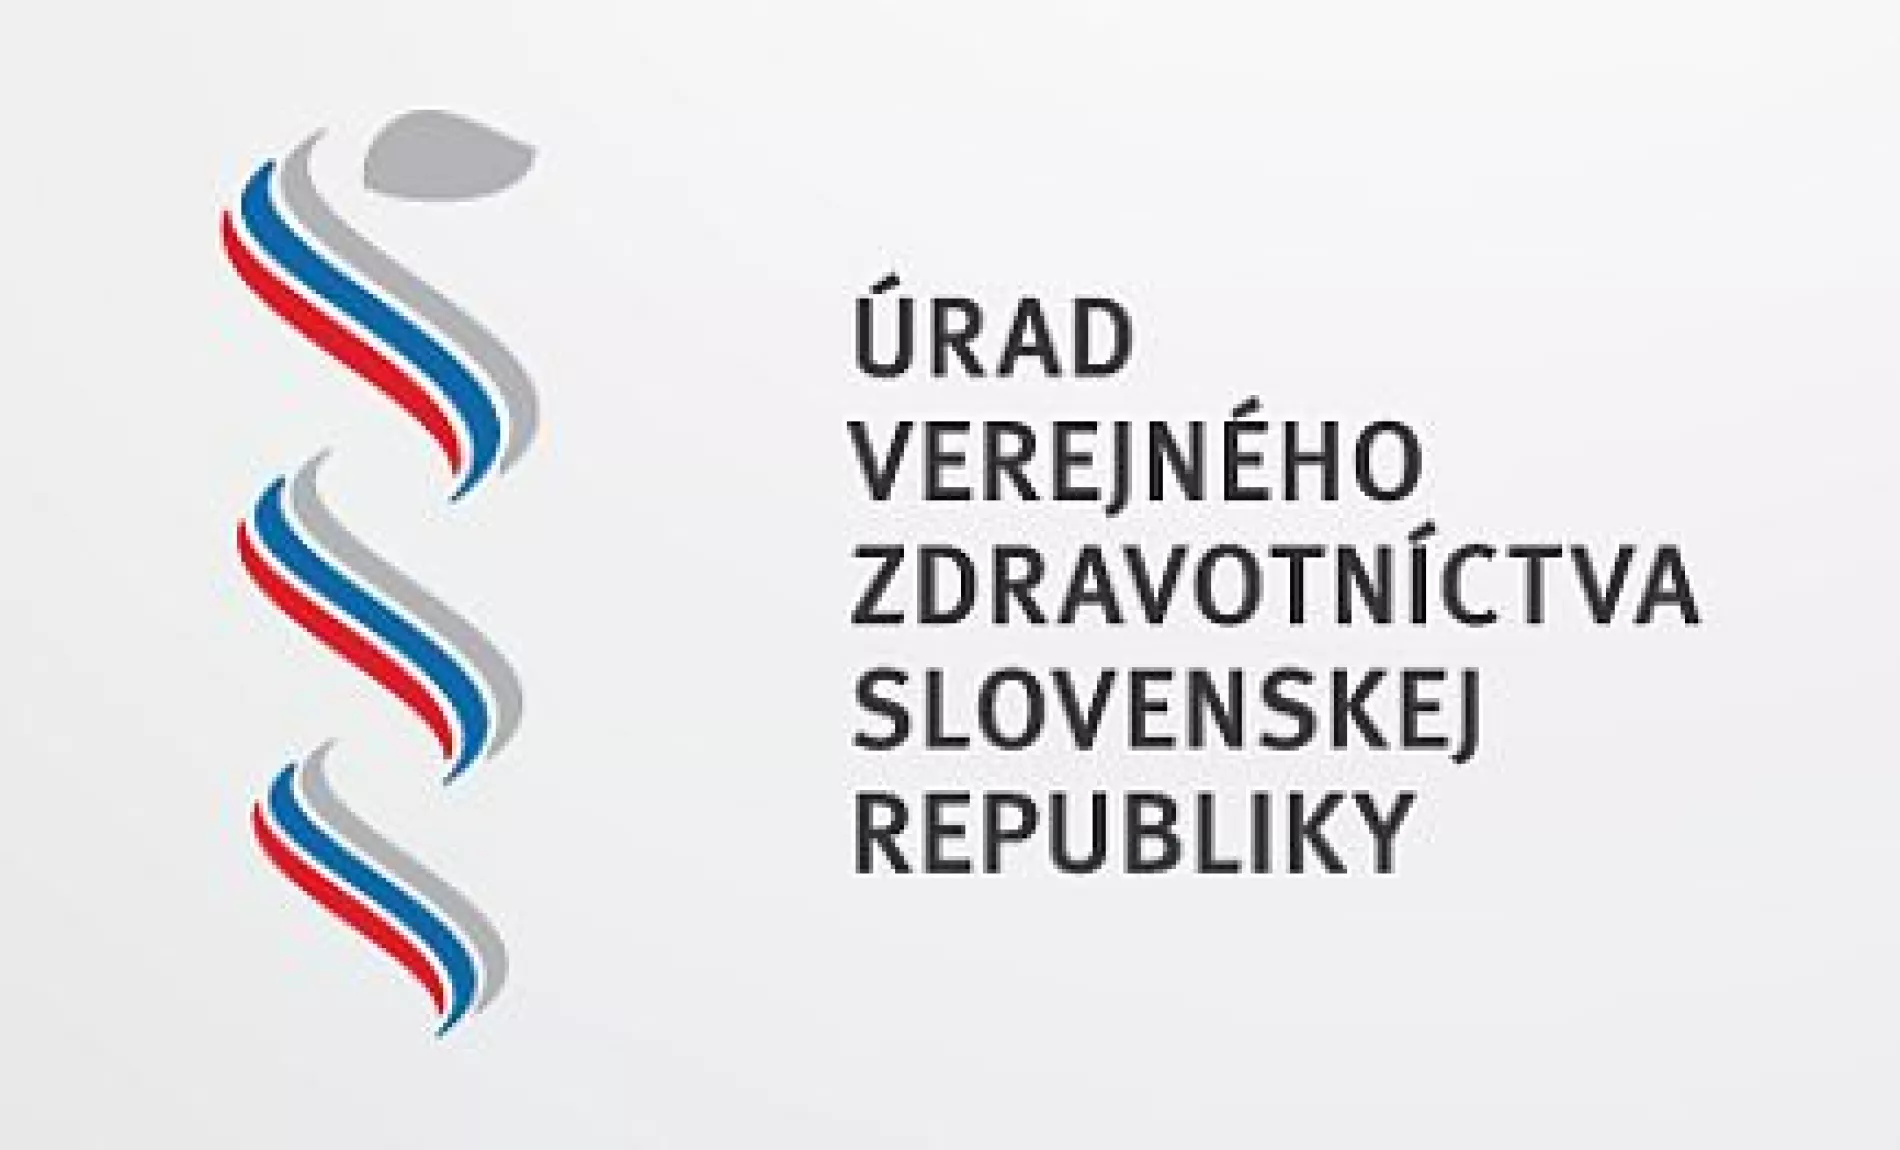 Úrad verejného zdravotníctva Slovenskej republiky: OPATRENIA v súvislosti s pandémiou COVID-19 od 1.10.2020 do odvolania